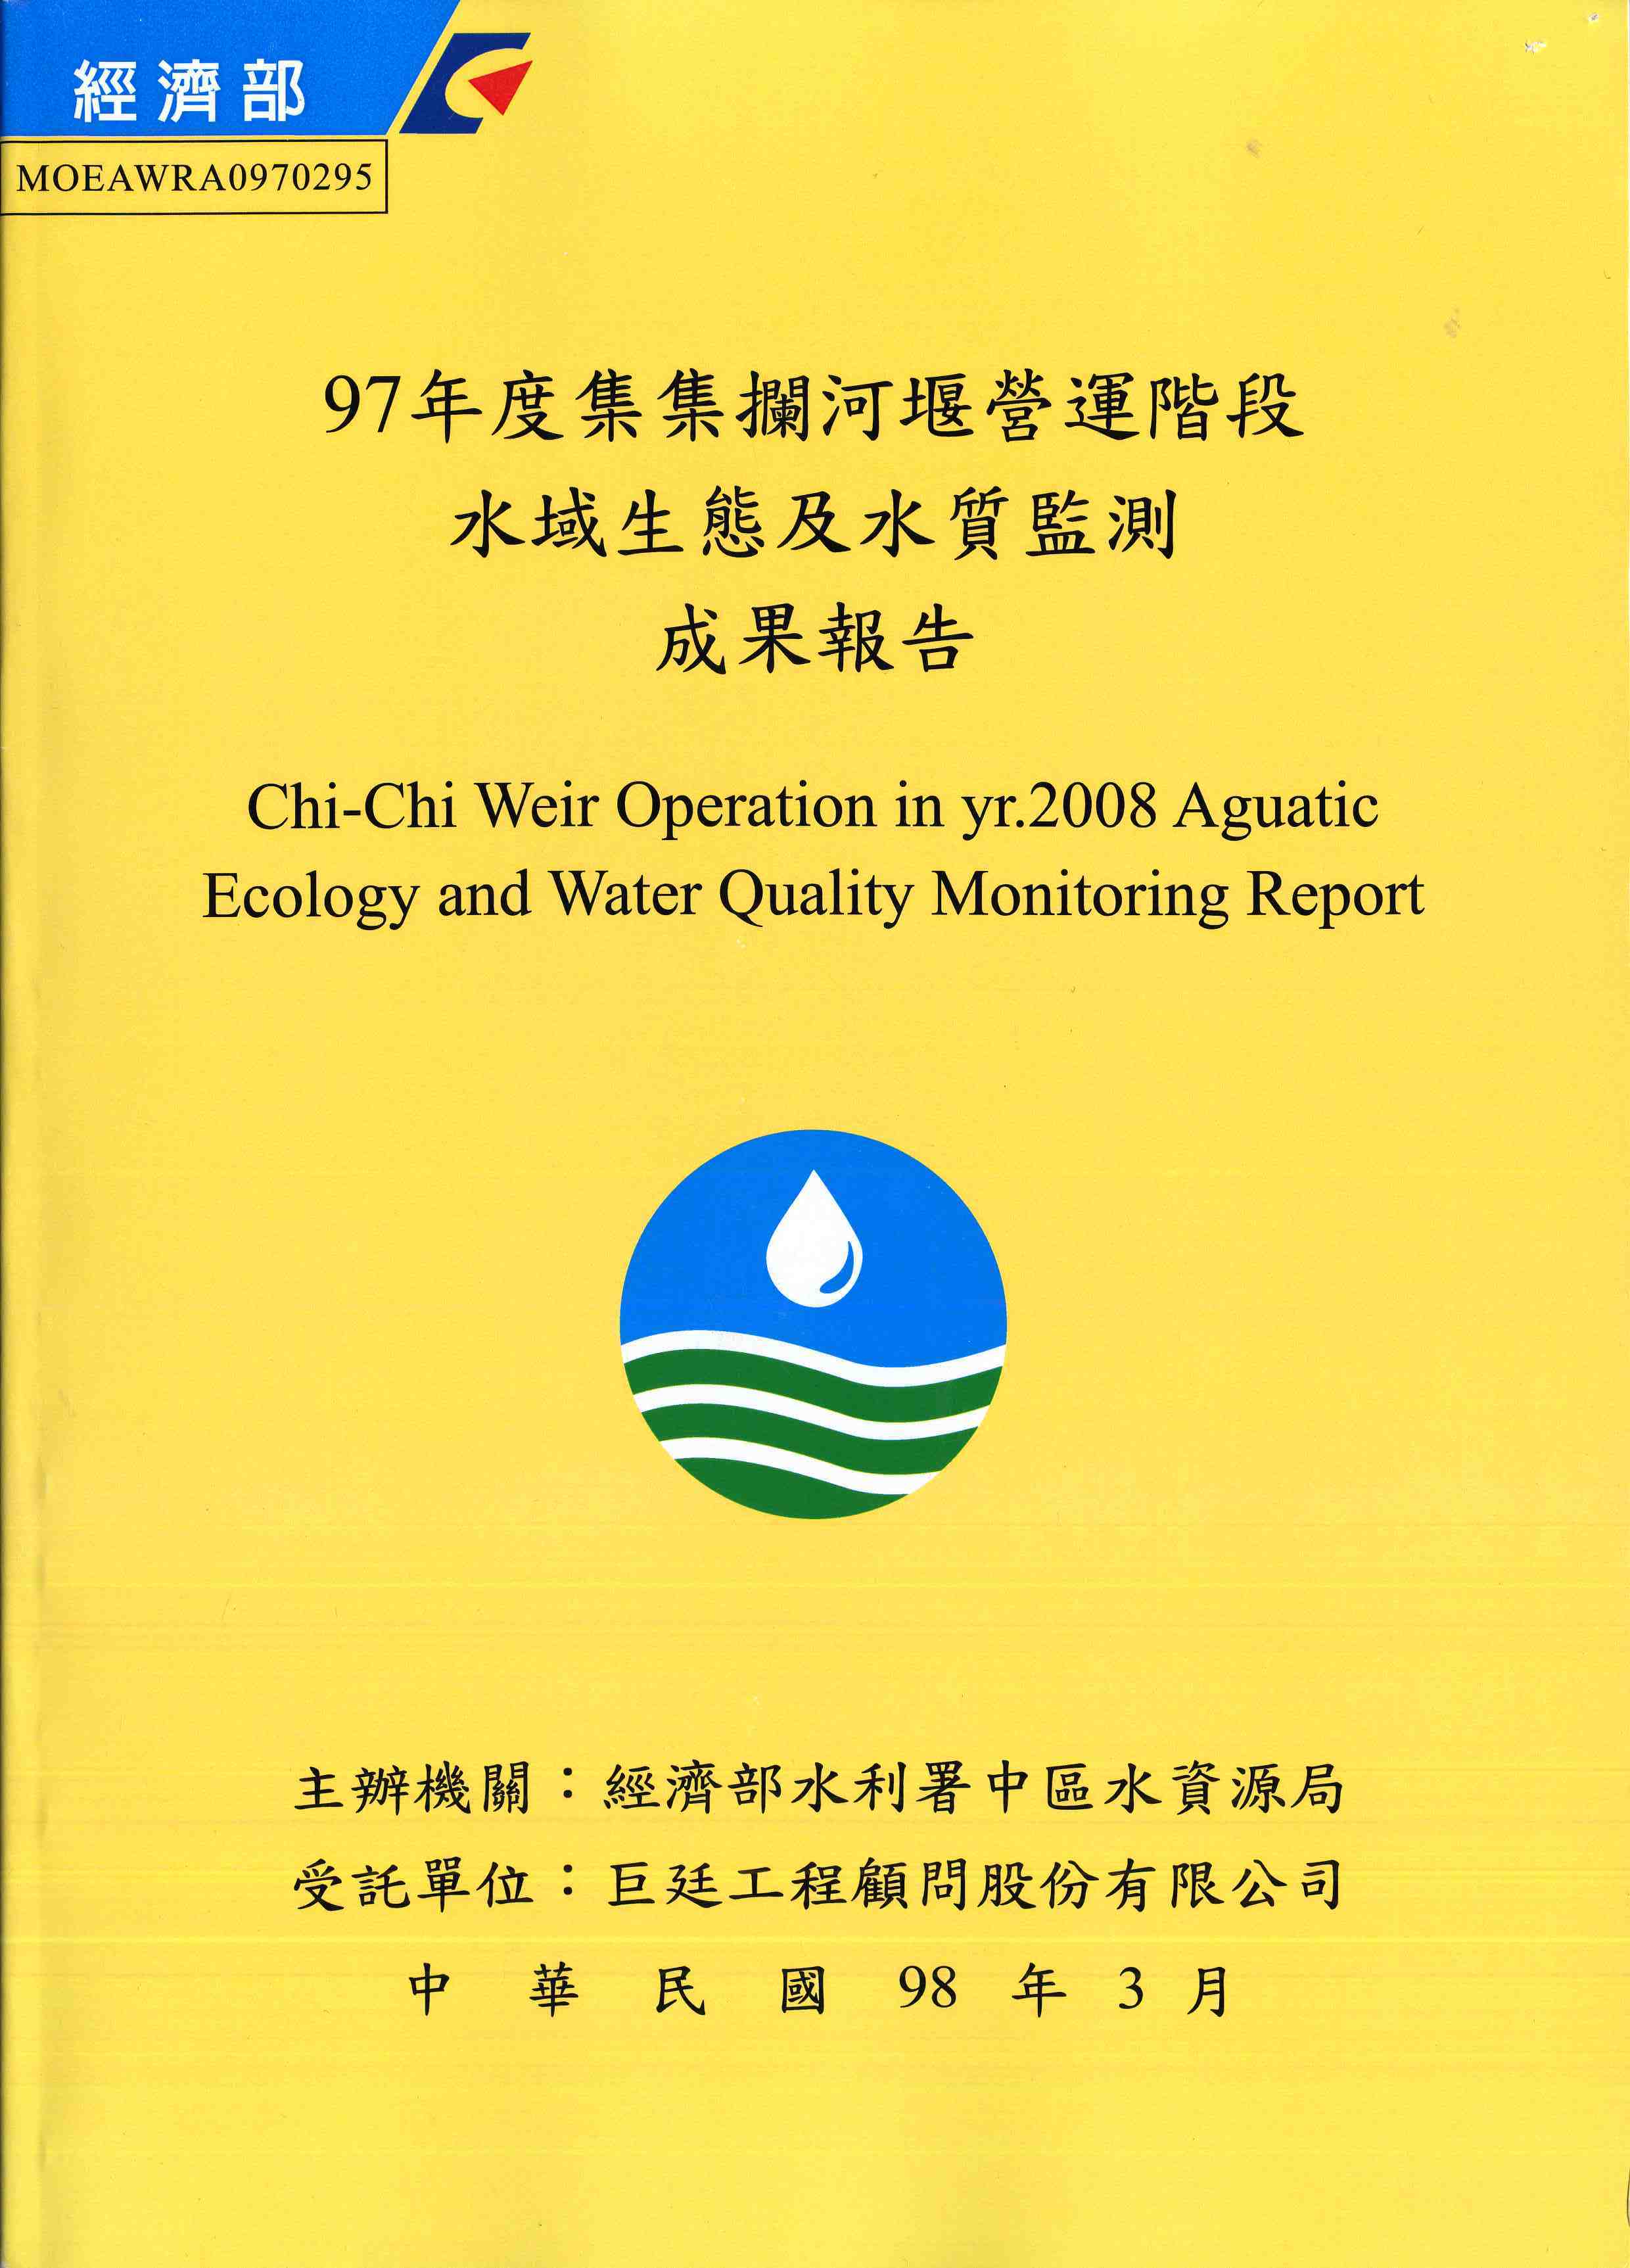 97年度集集攔河堰營運階段水域生態及水質監測成果報告